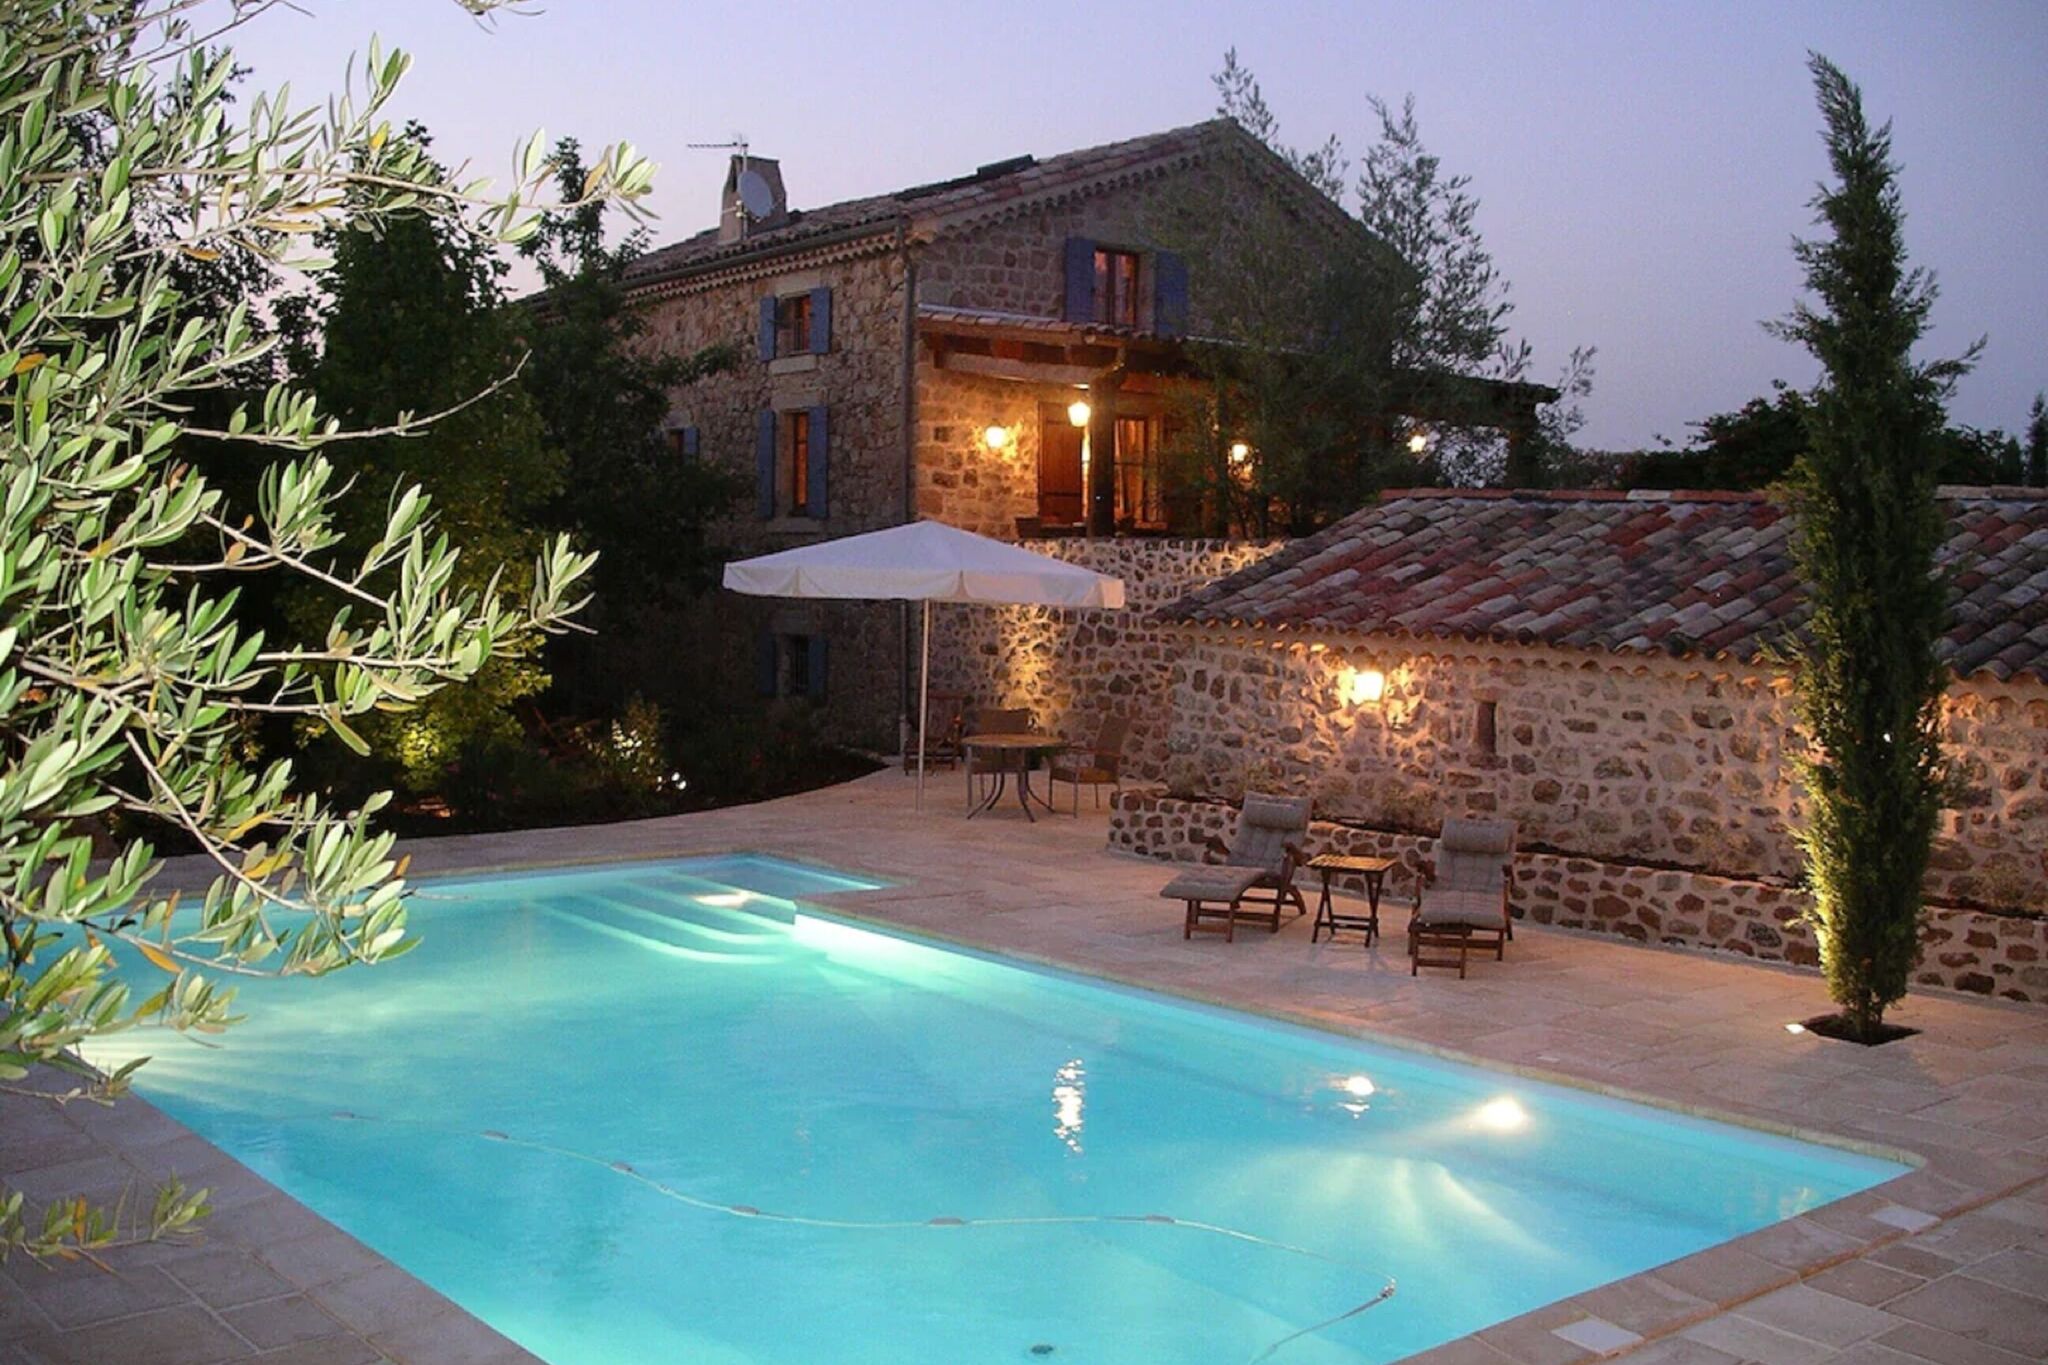 Maison de vacances accueillante à Rosières avec piscine